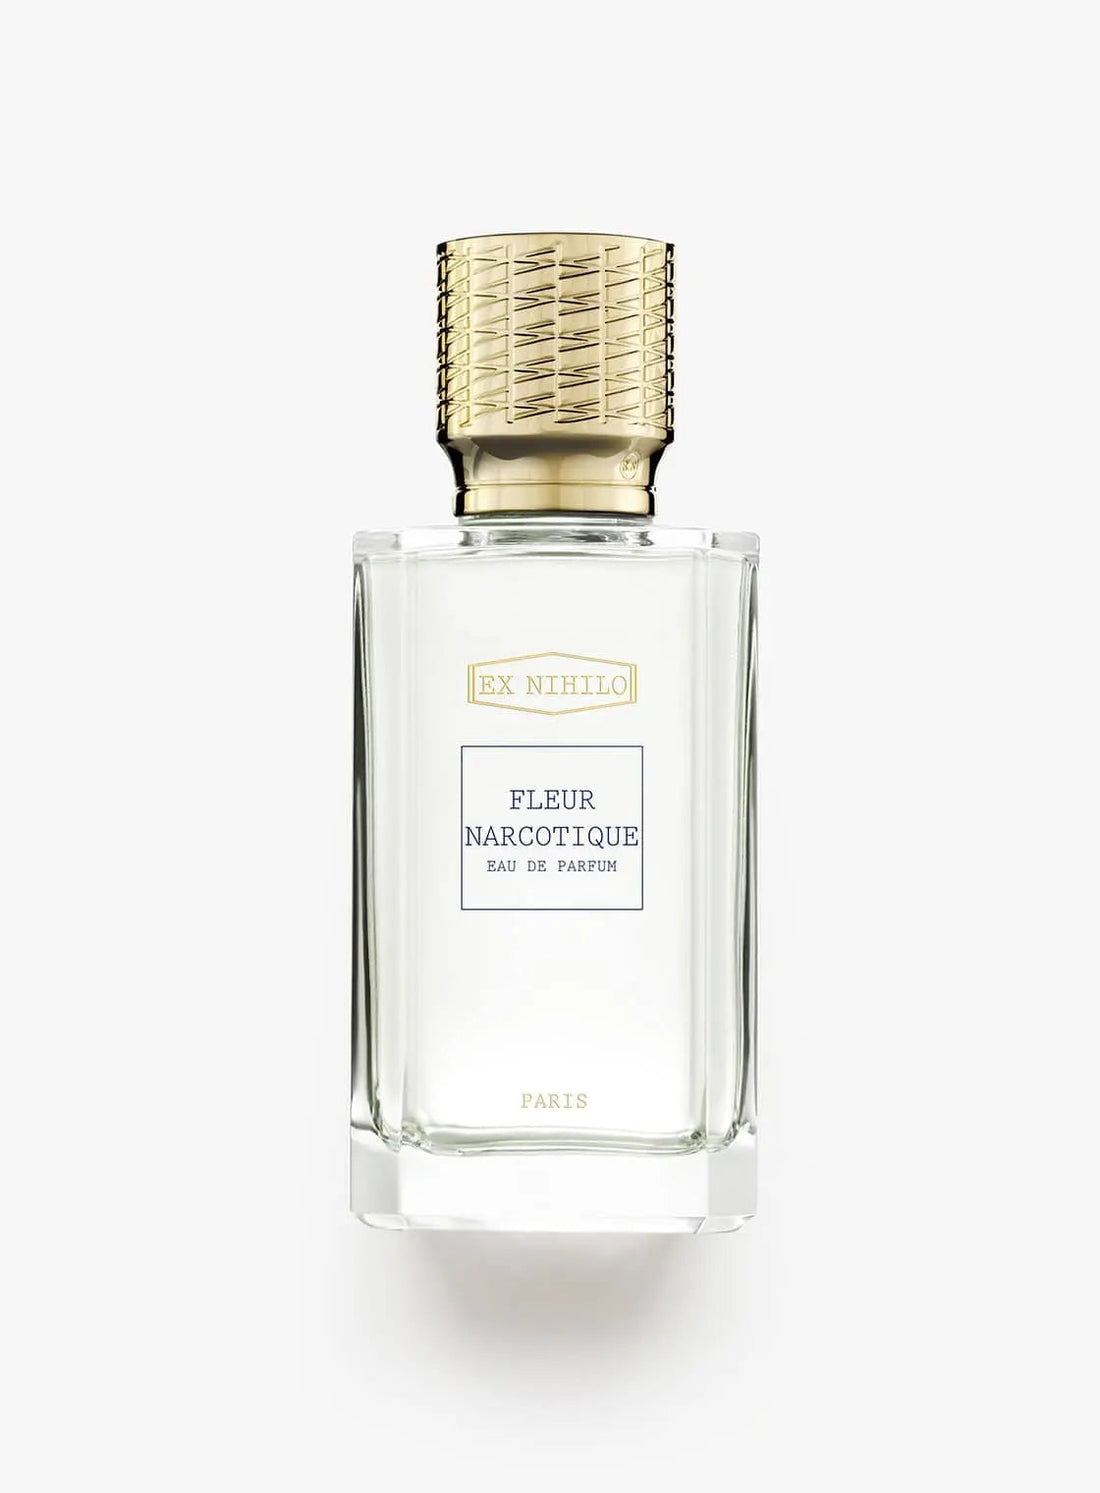 Ex nihilo Fleur Narcotique eau de parfum - 30 ml 10 Years edition